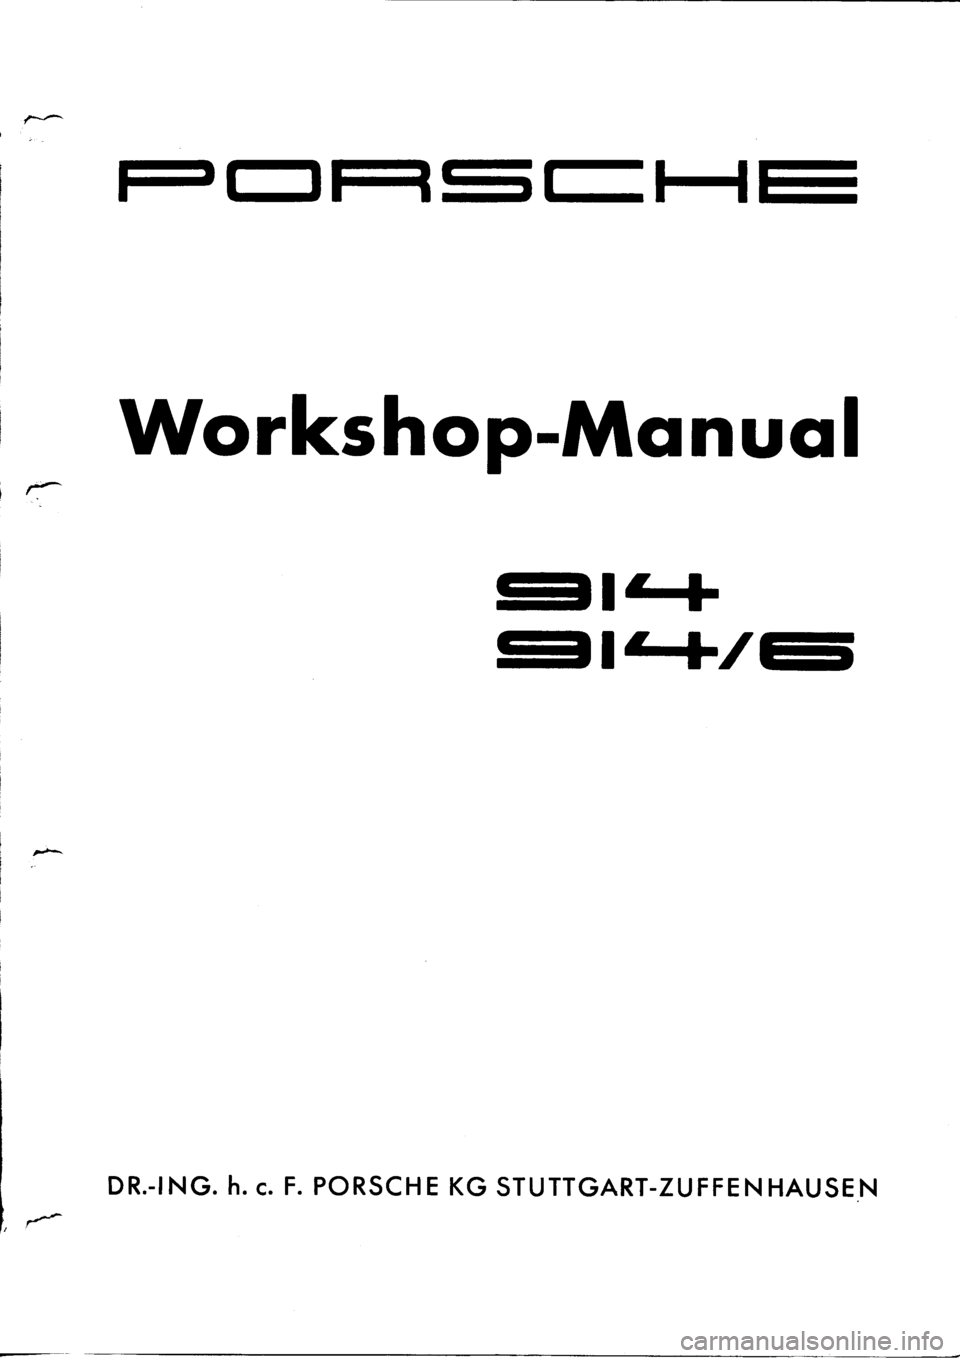 PORSCHE 914 1974 1.G Engine 1 Workshop Manual 